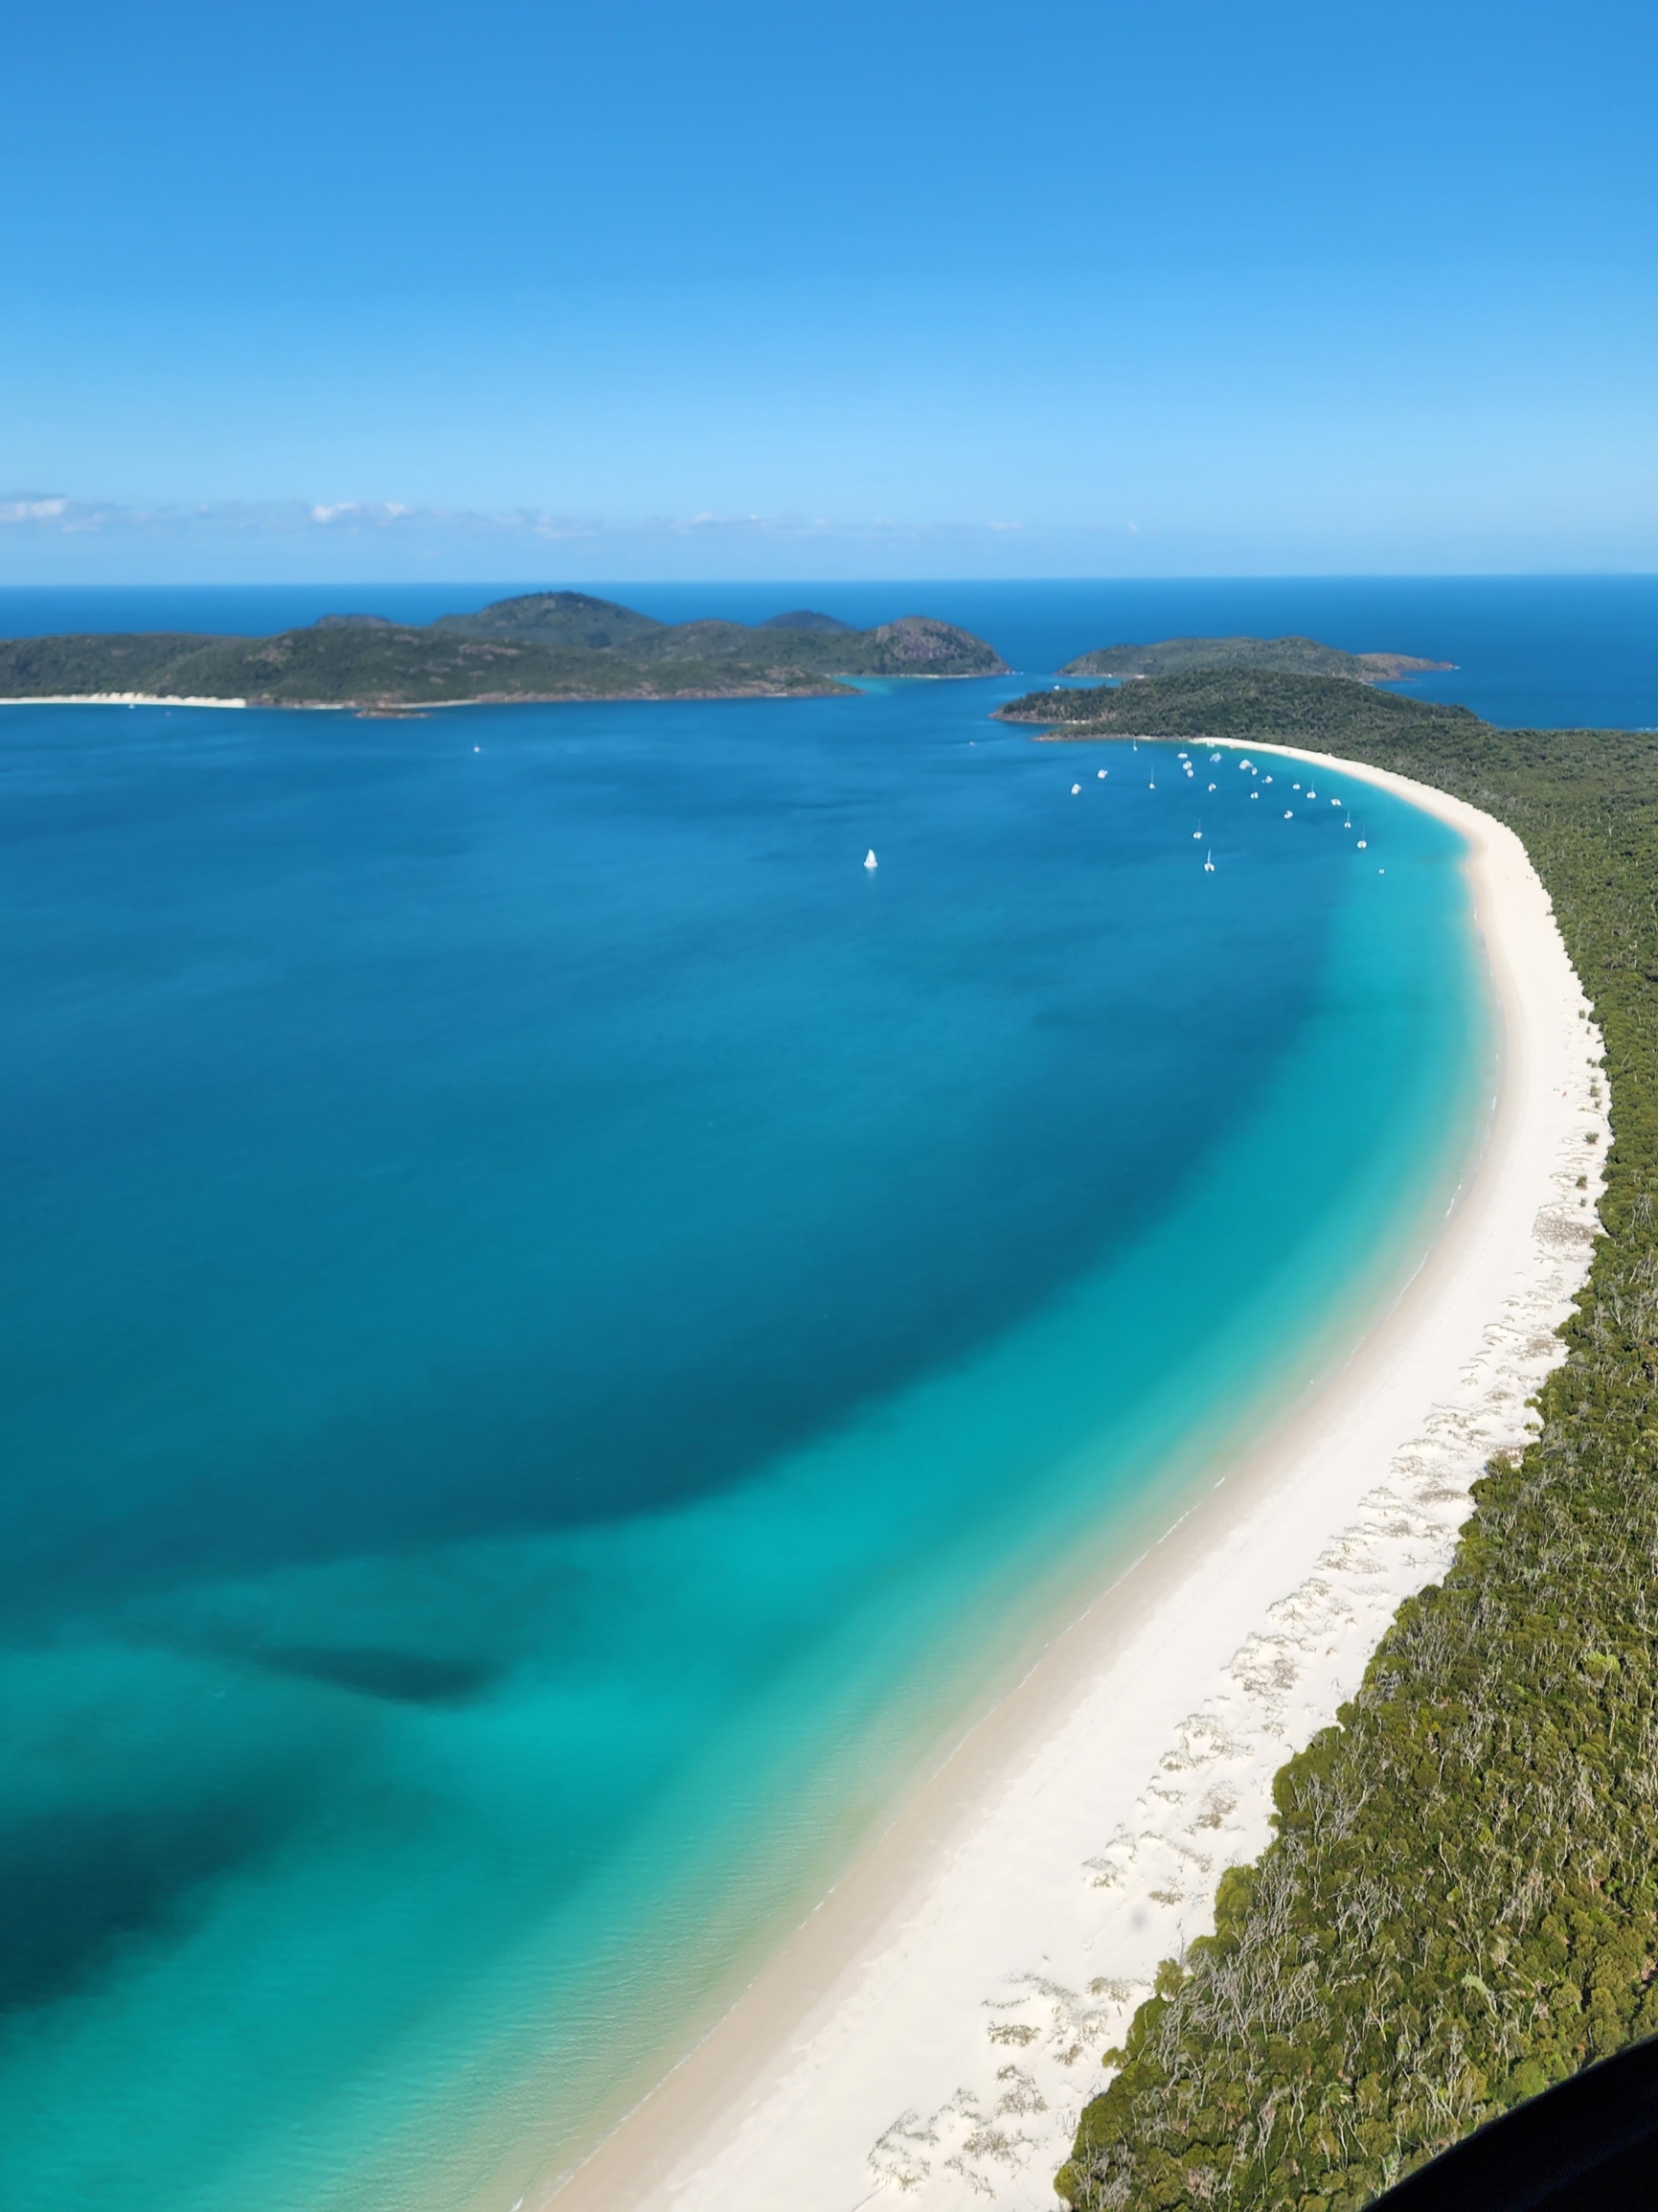 好圣灵群岛假日（Whitsunday Islands） 圣灵群岛距离昆士兰州海岸 55 公里，澳洲的